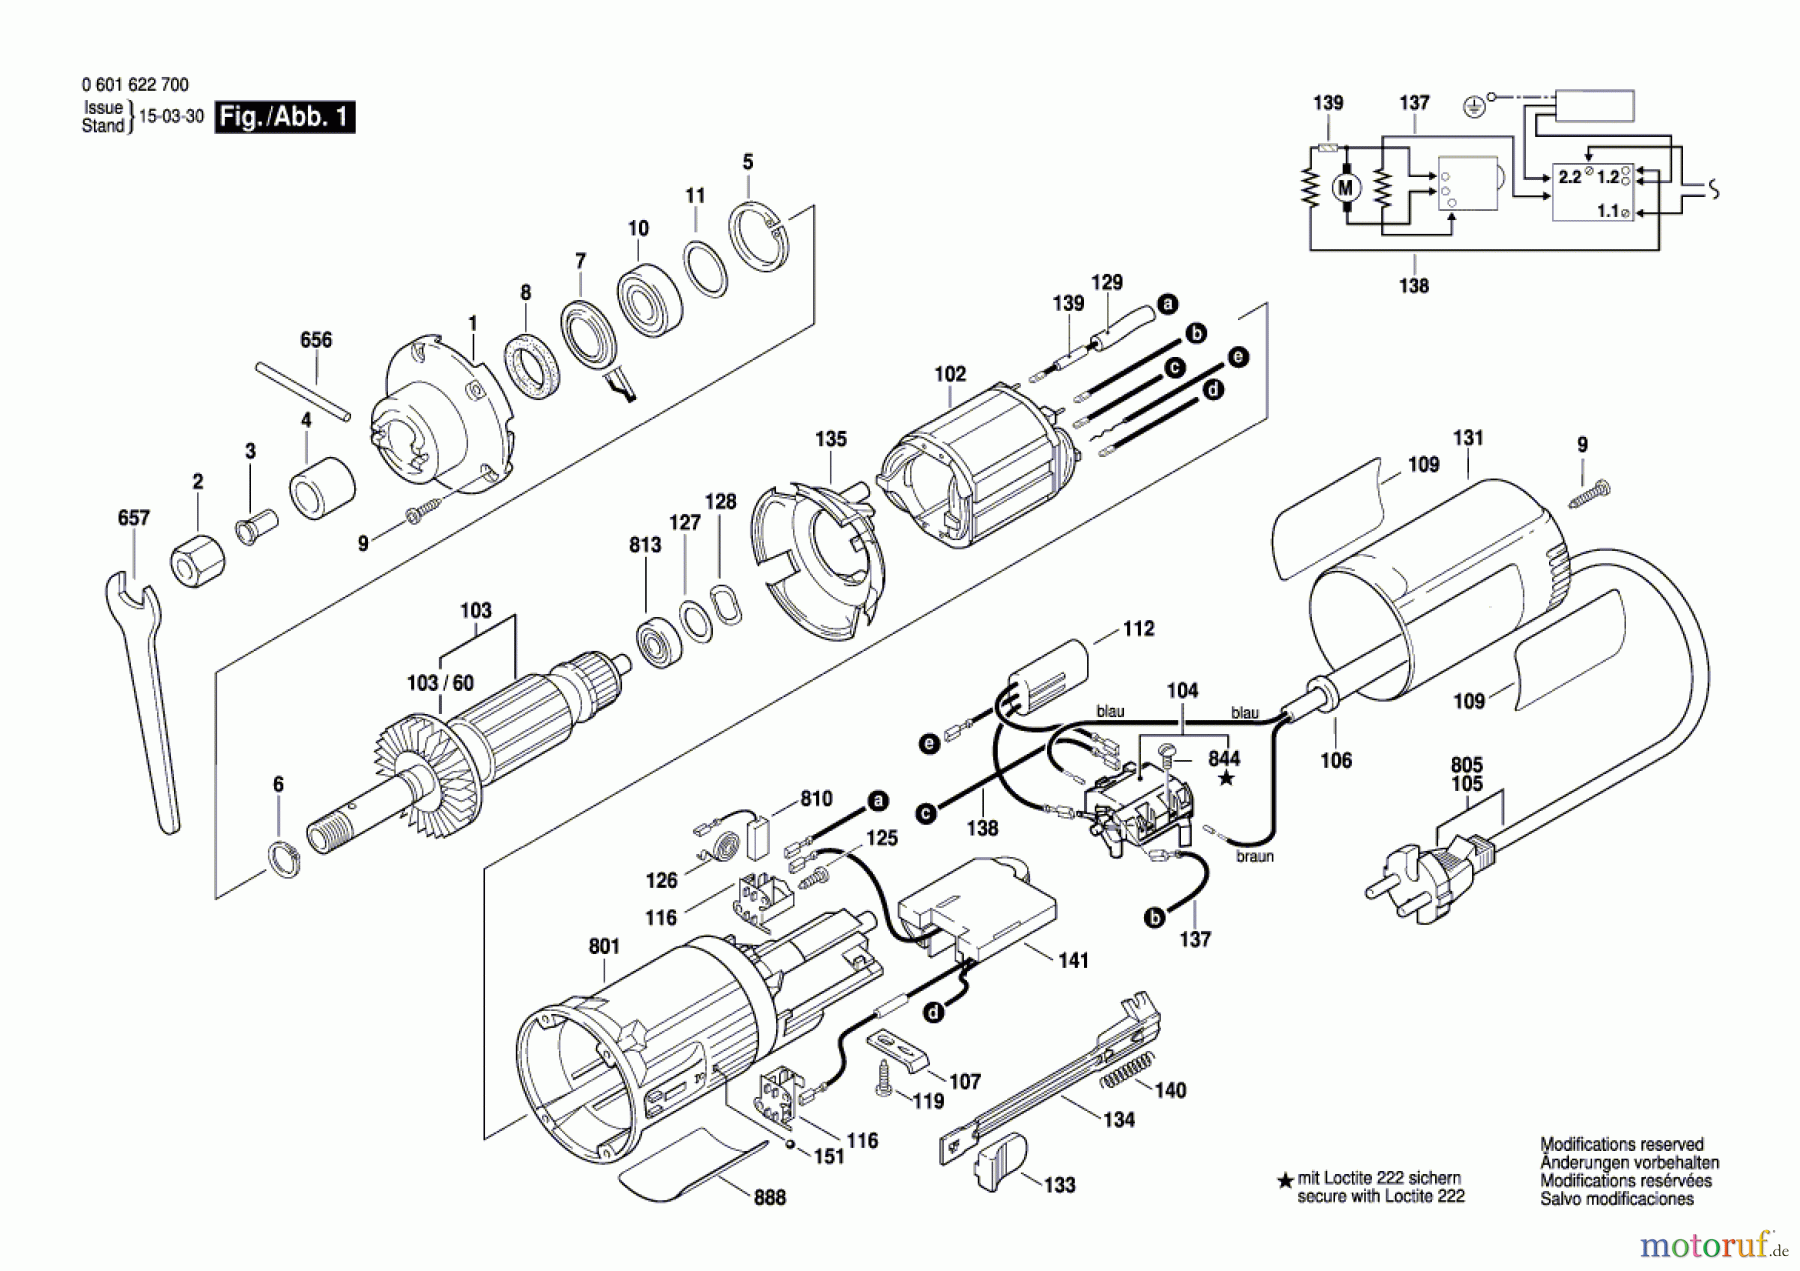  Bosch Werkzeug Kantenfräse GKF 600 CE Seite 1